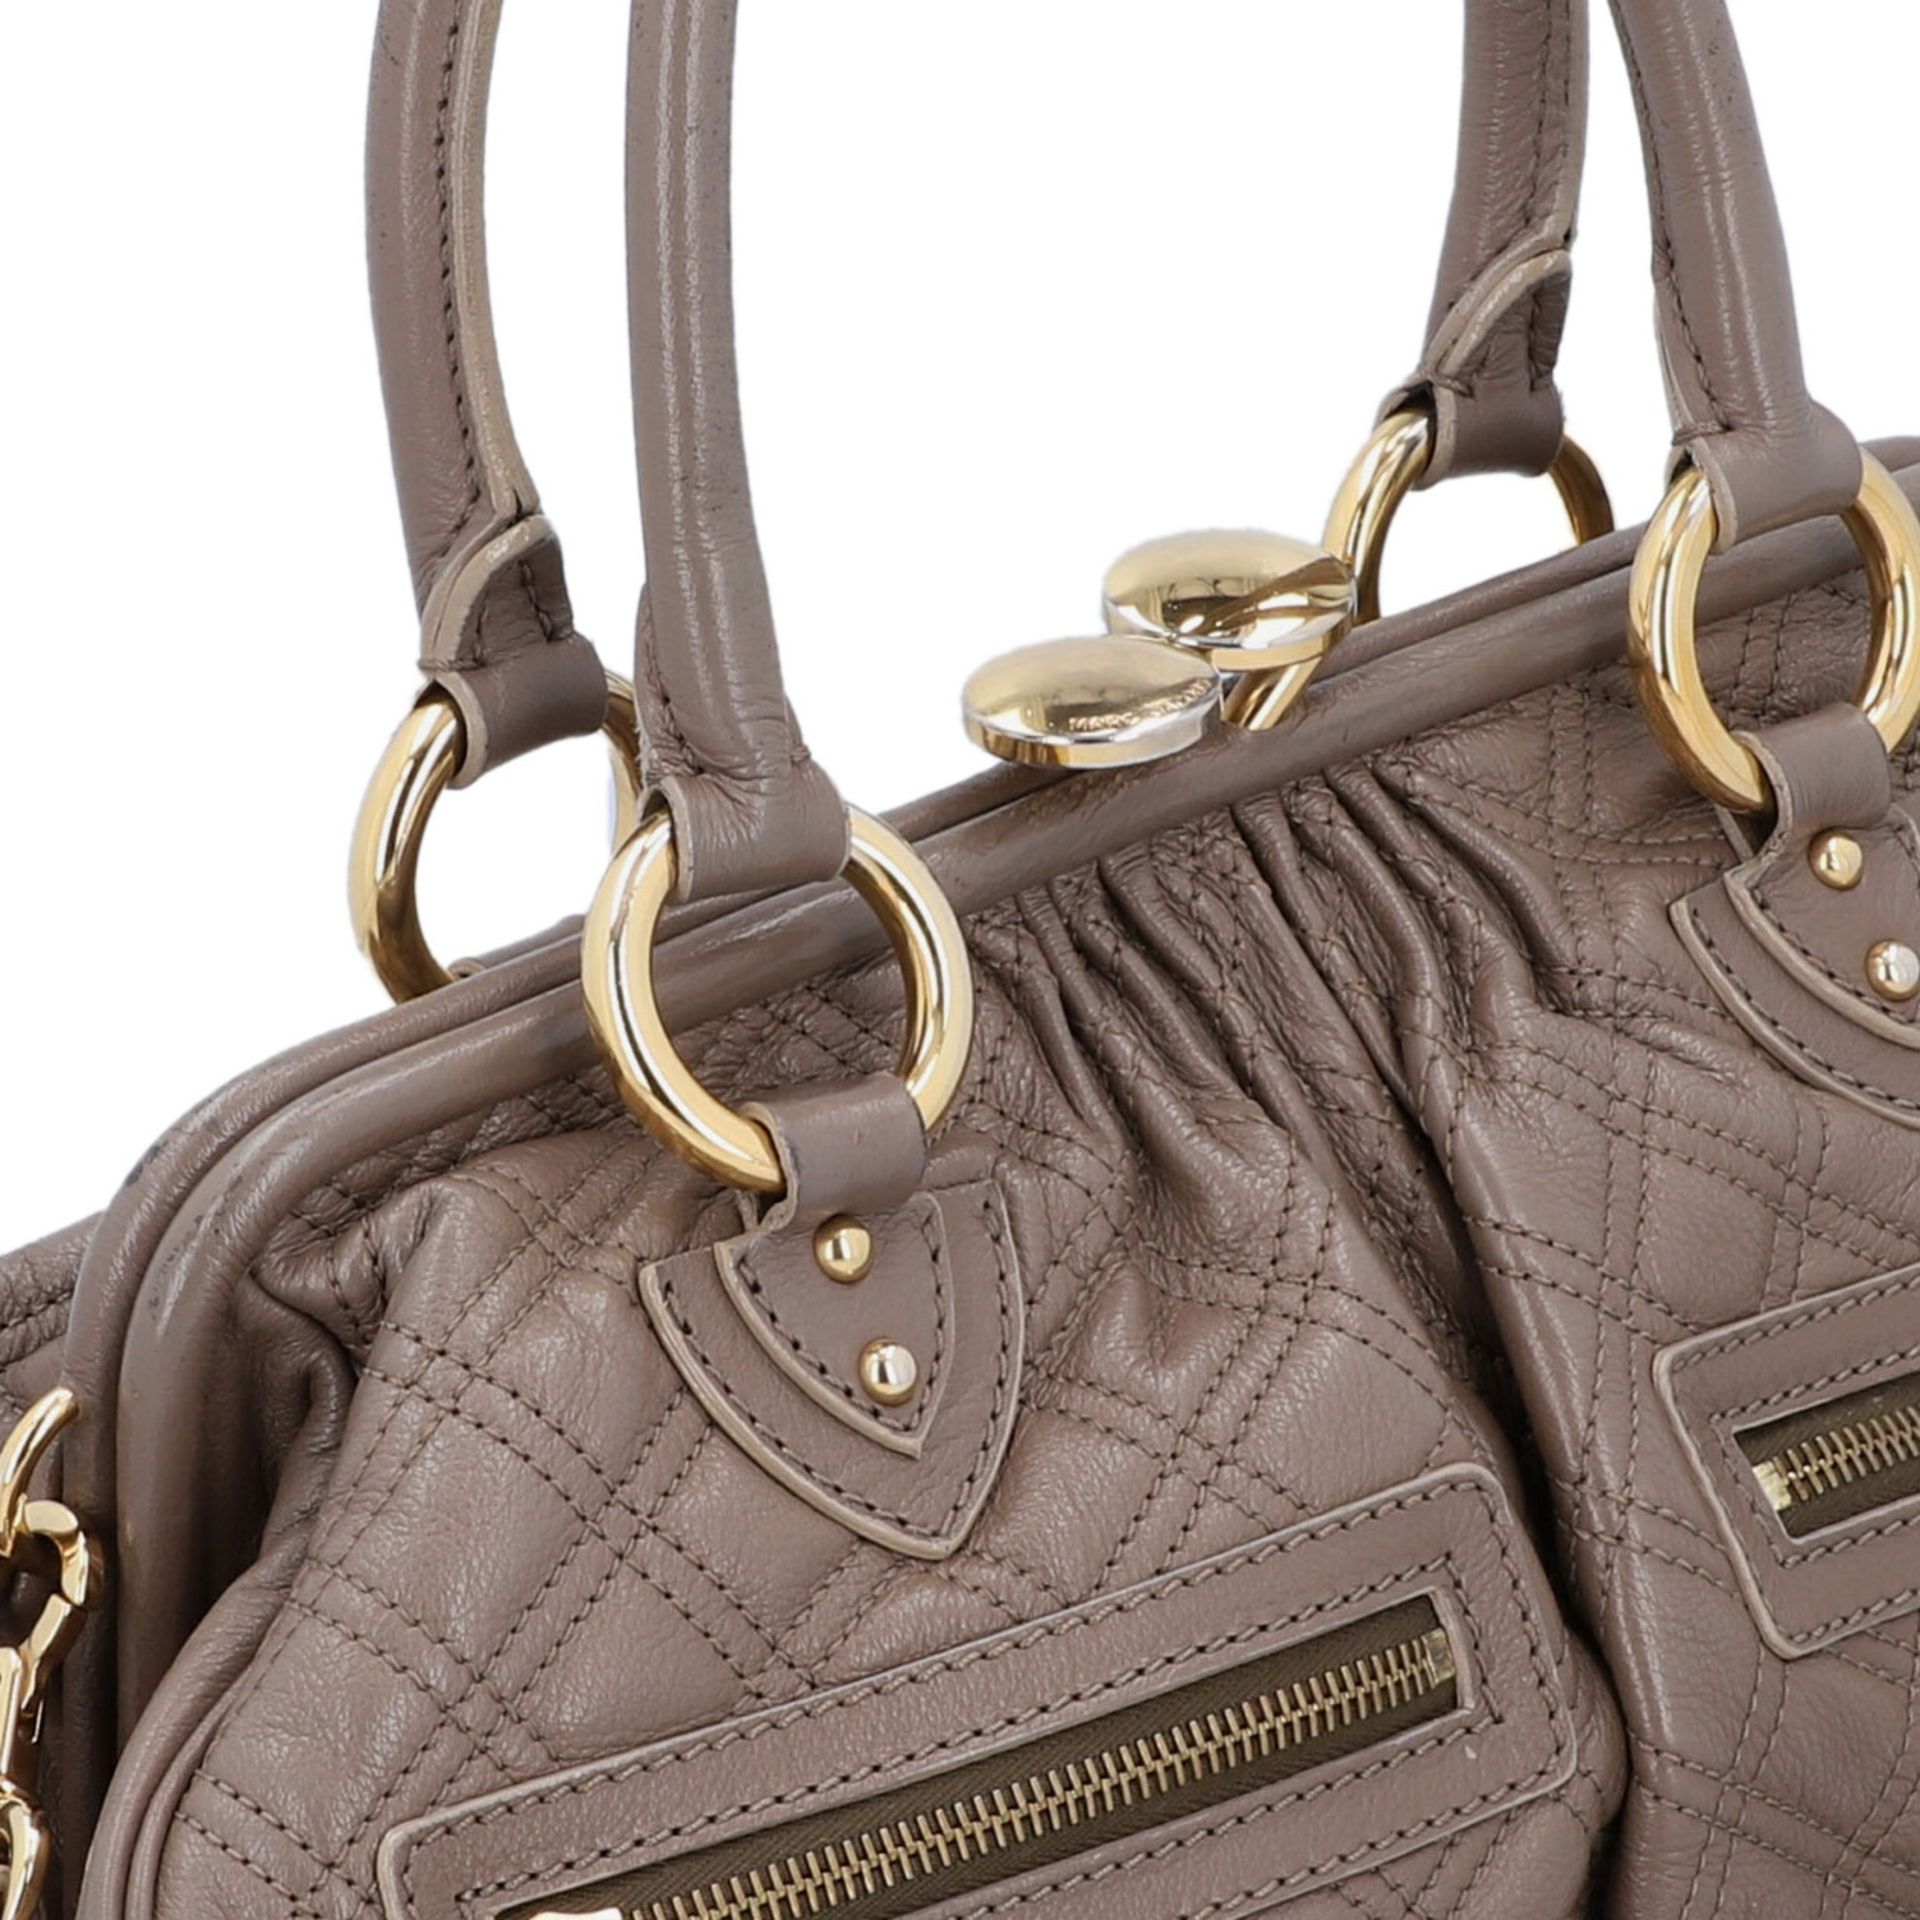 MARC JACOBS Handtasche. Leder in Elefantengrau mit goldfarbener Hardware und Rautenste - Image 8 of 8